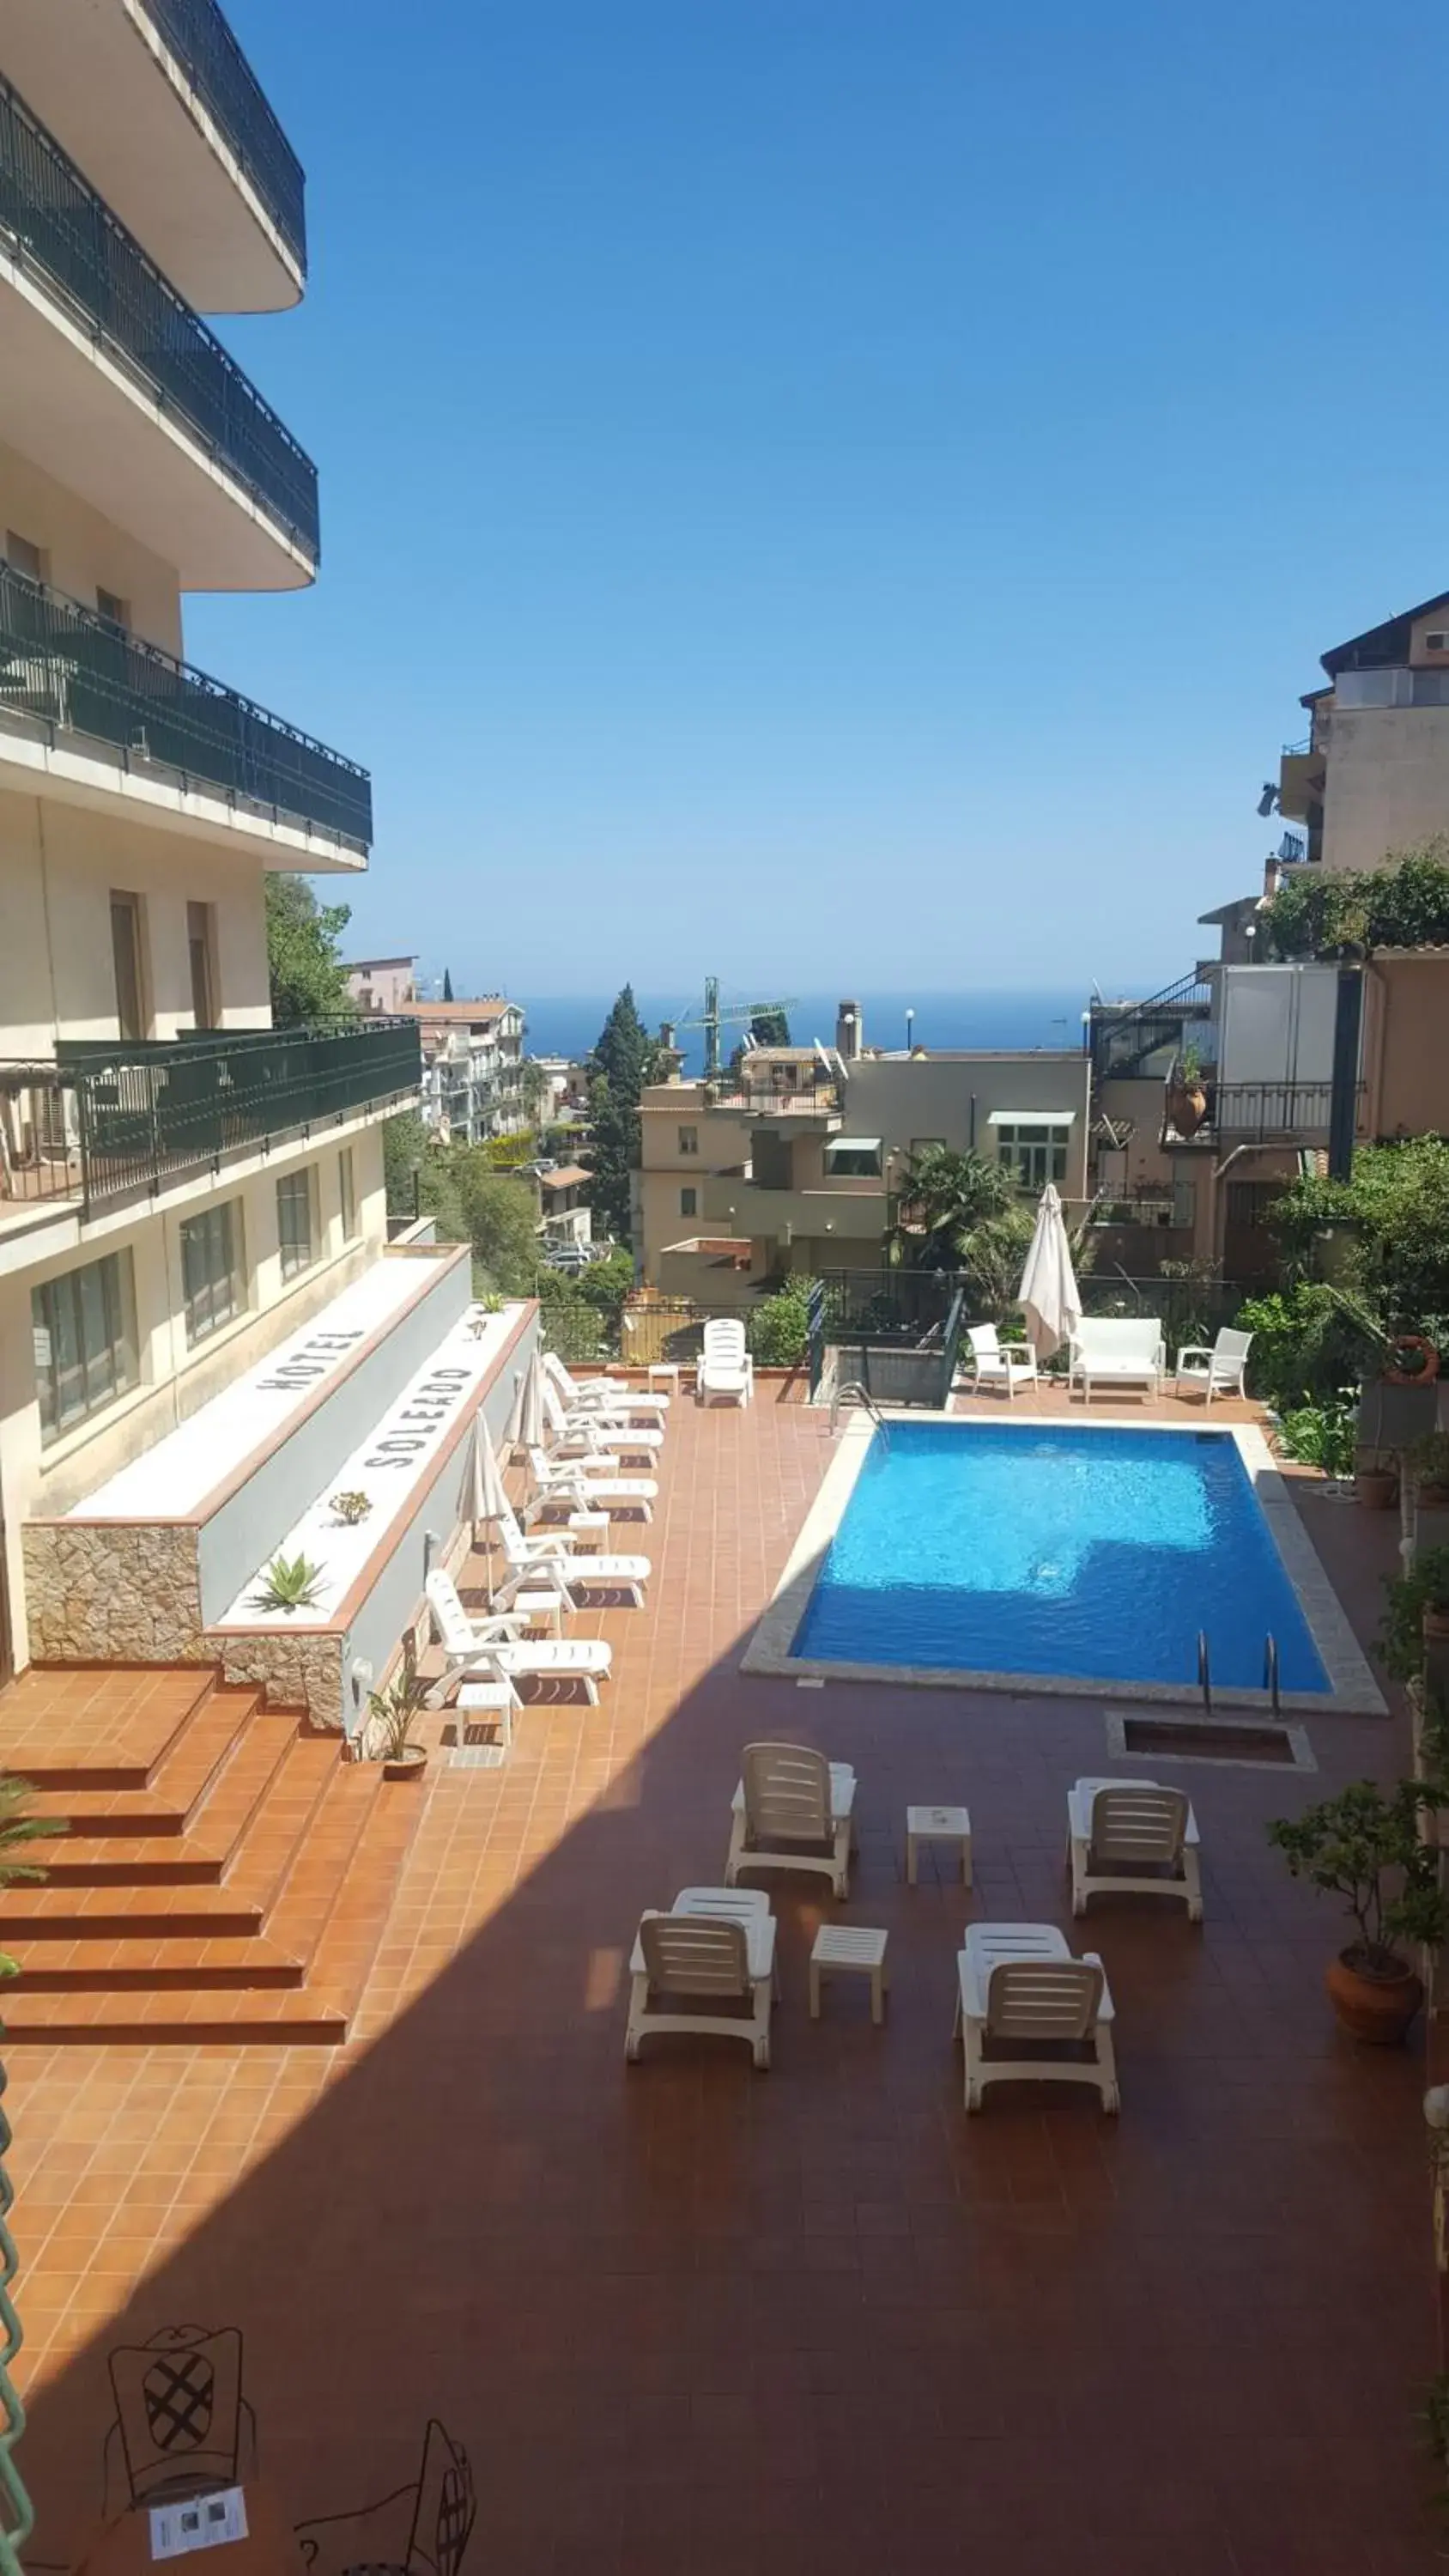 Pool View in Hotel Soleado